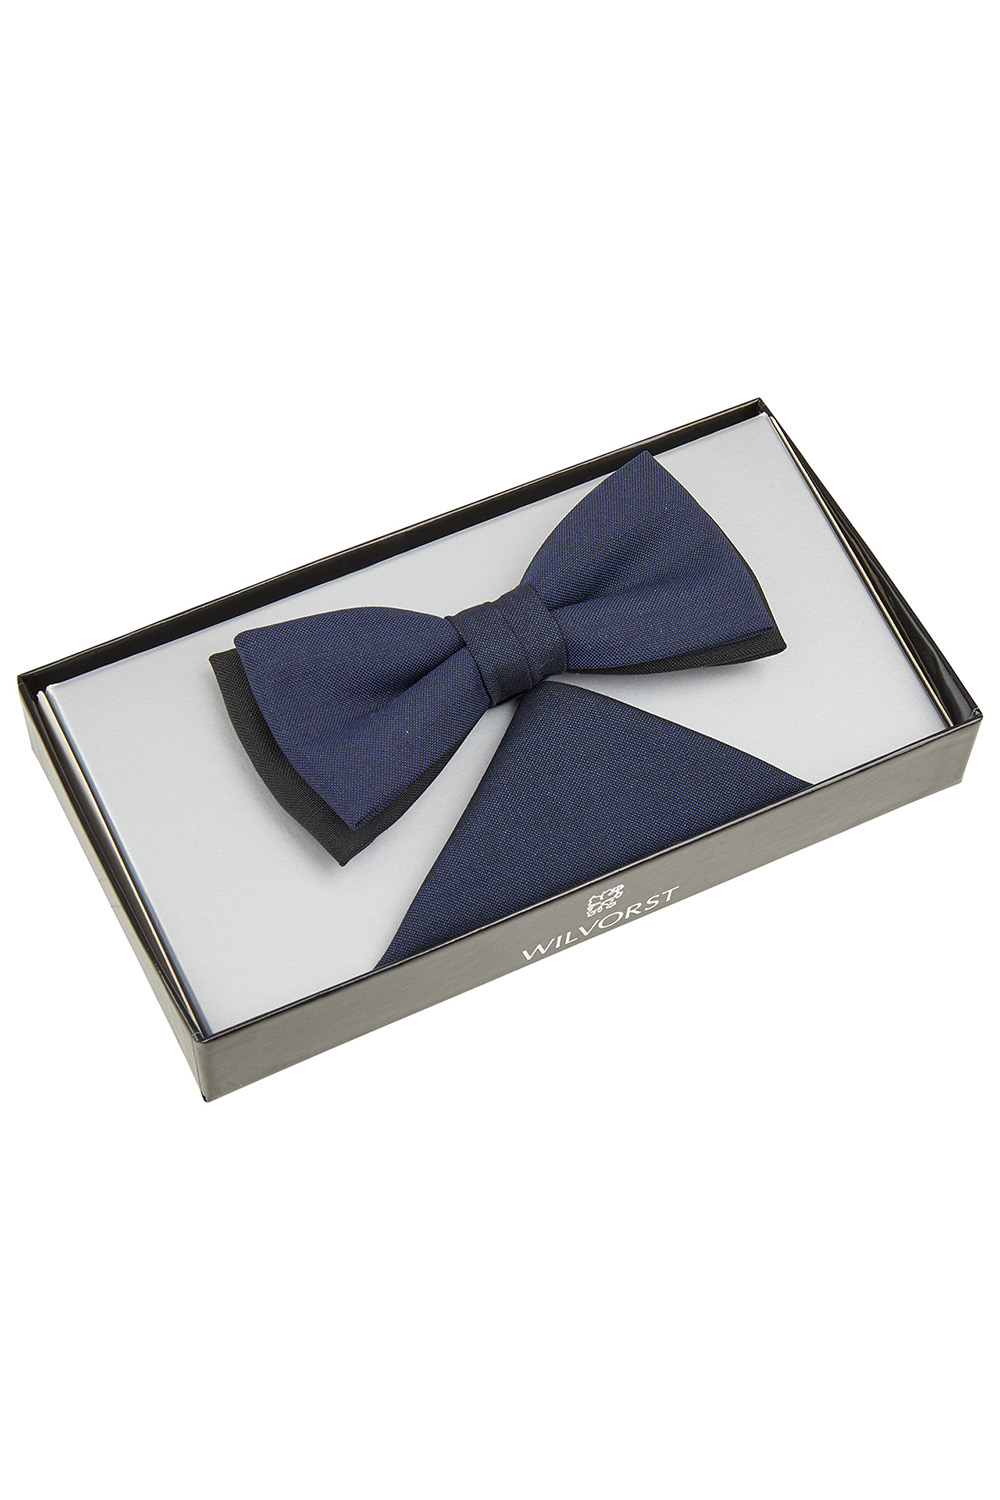 WILVORST kék csokornyakkendő és díszzsebkendő díszdobozban 471201-32 Modell 0429